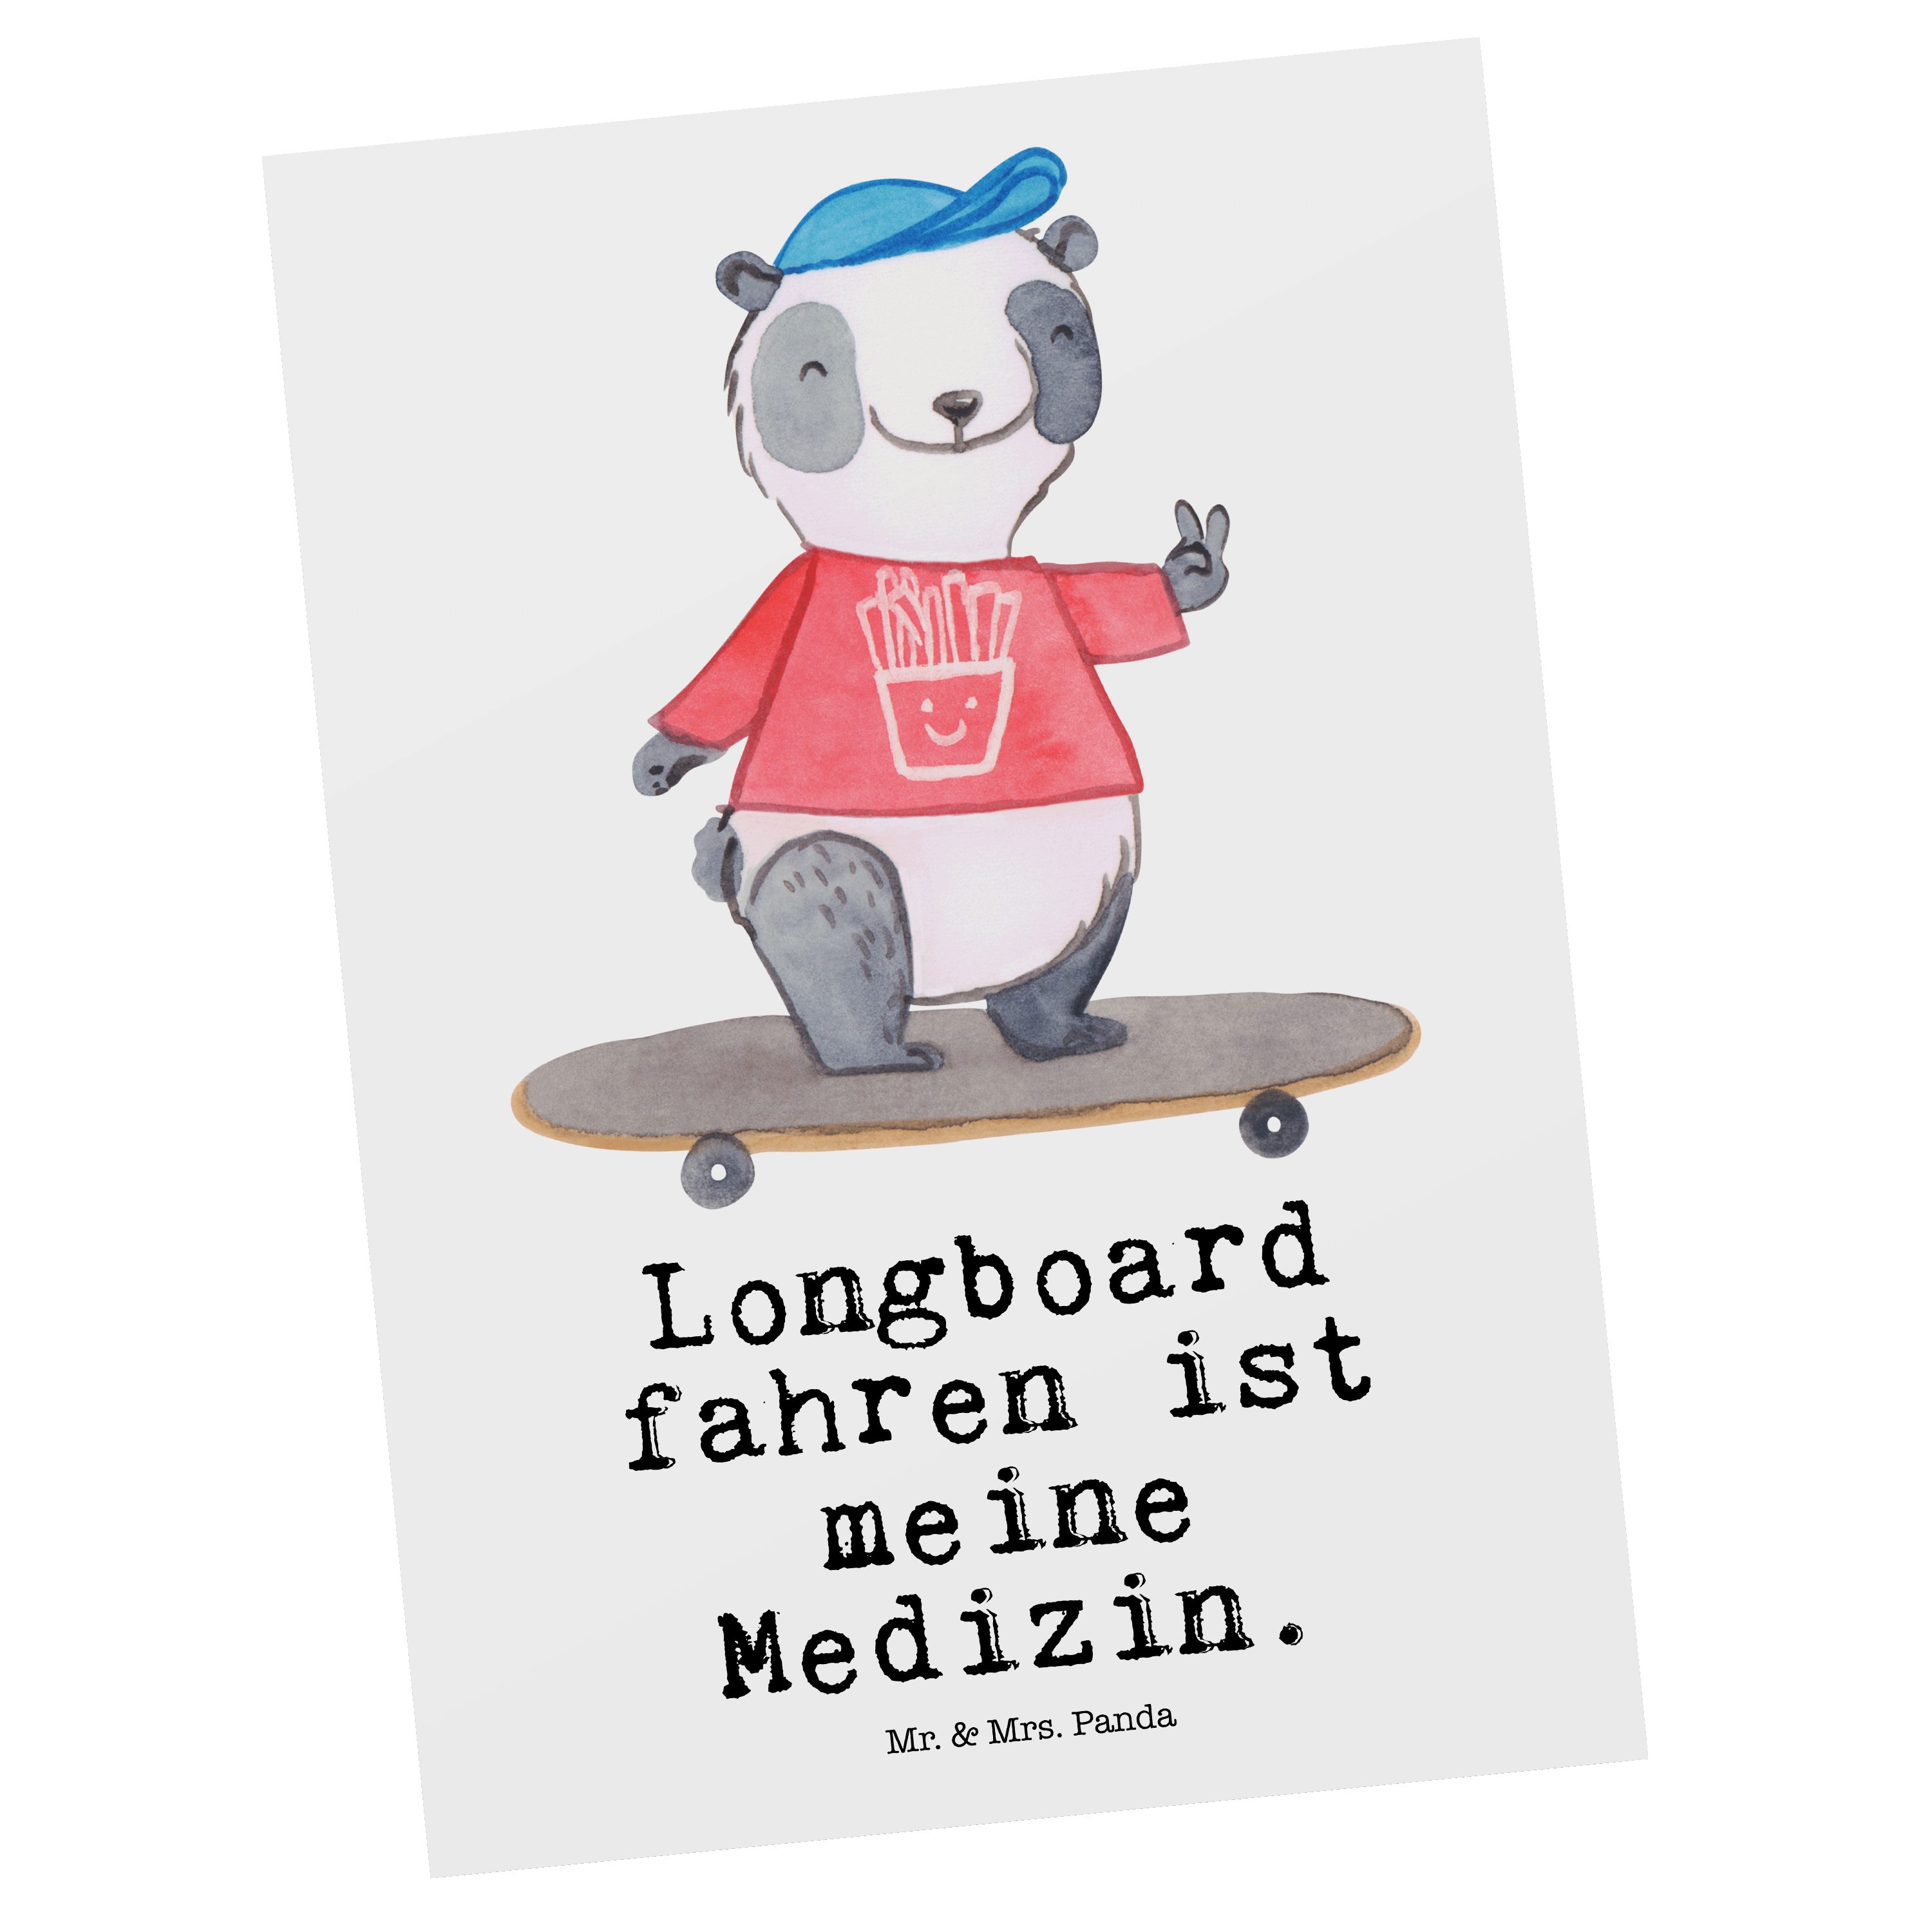 Mr. & Mrs. Panda Postkarte - Longboardfahren, Medizin - fahren Panda Longboard Weiß Ei Geschenk